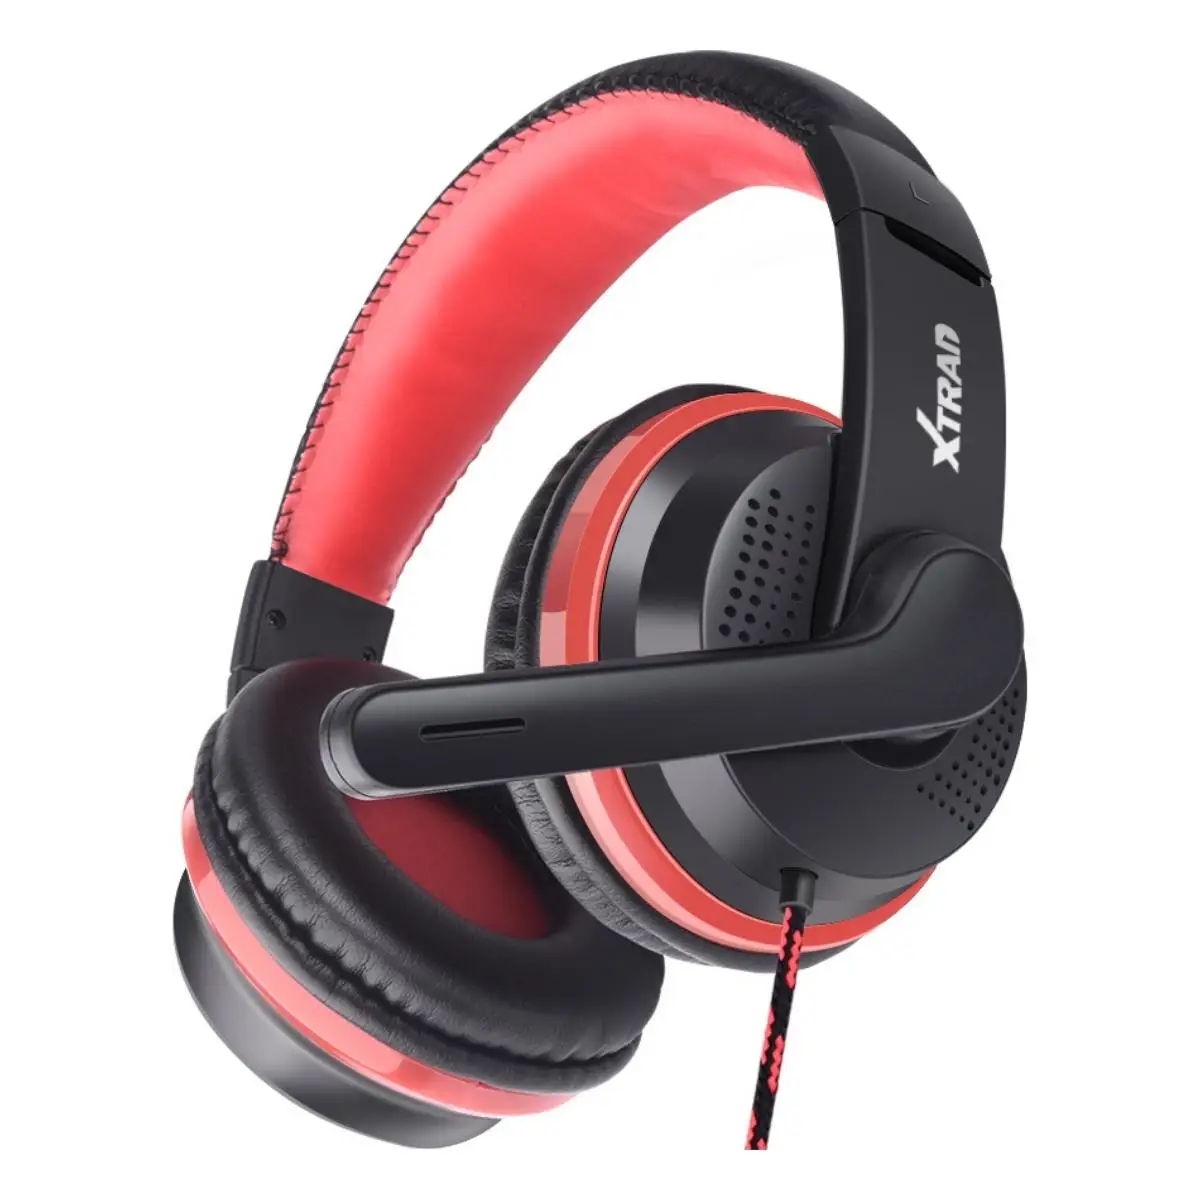 

Headphone Fone de ouvido Gamer com Microfone para PC Notebook Celular PS4 entrada P3